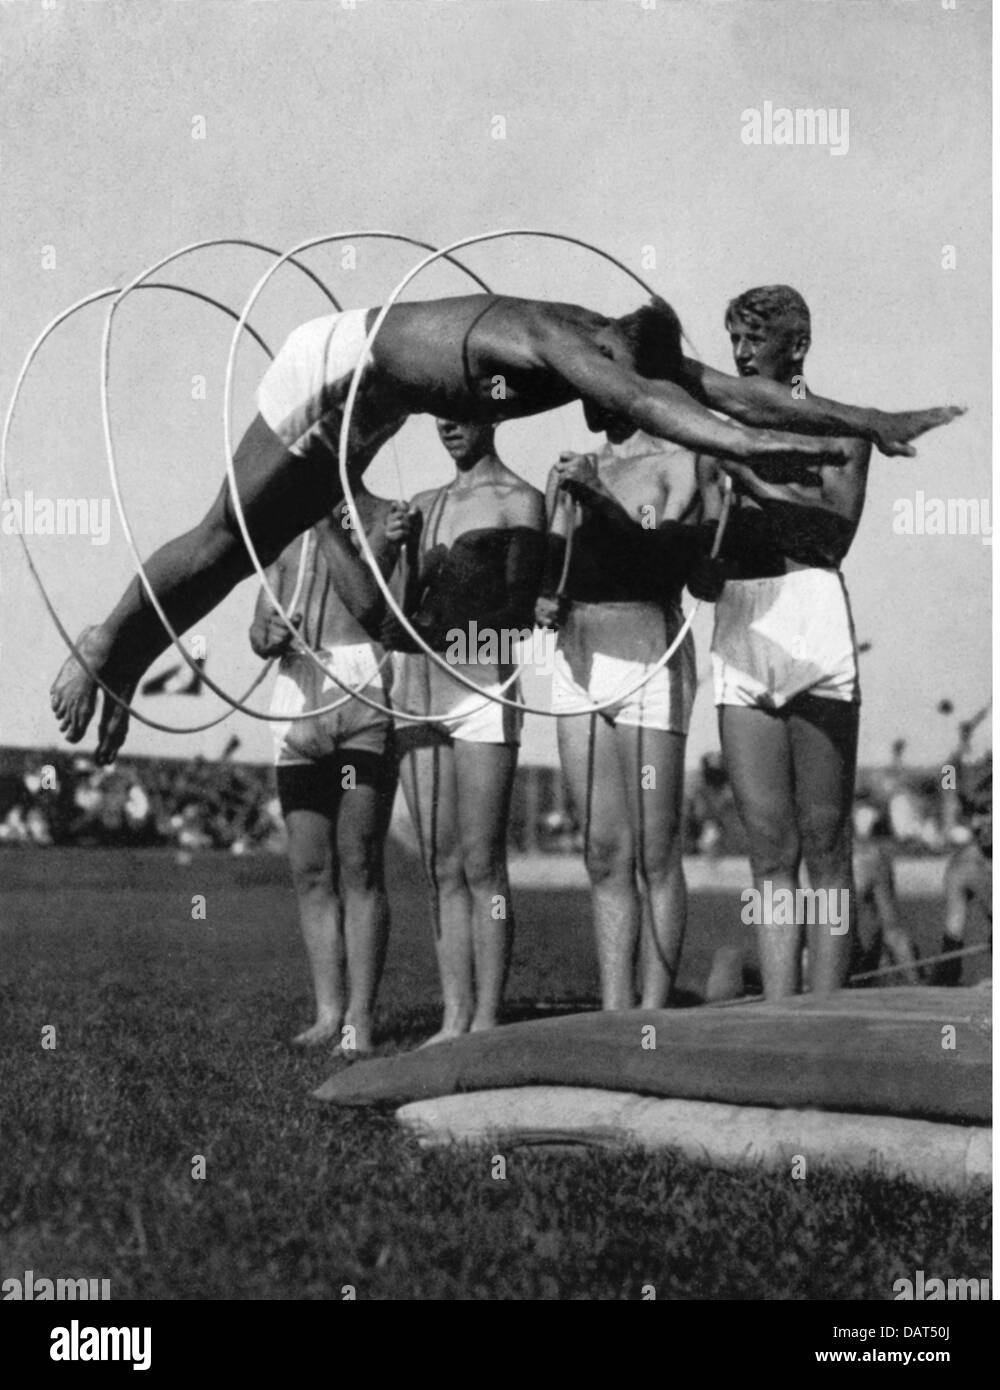 Nazisme / National socialisme, sport, manifestation sportive lors de l'exposition Reichsnaehrstand, Munich, 30.5. - 6.6.1937, droits-supplémentaires-Clearences-non disponible Banque D'Images